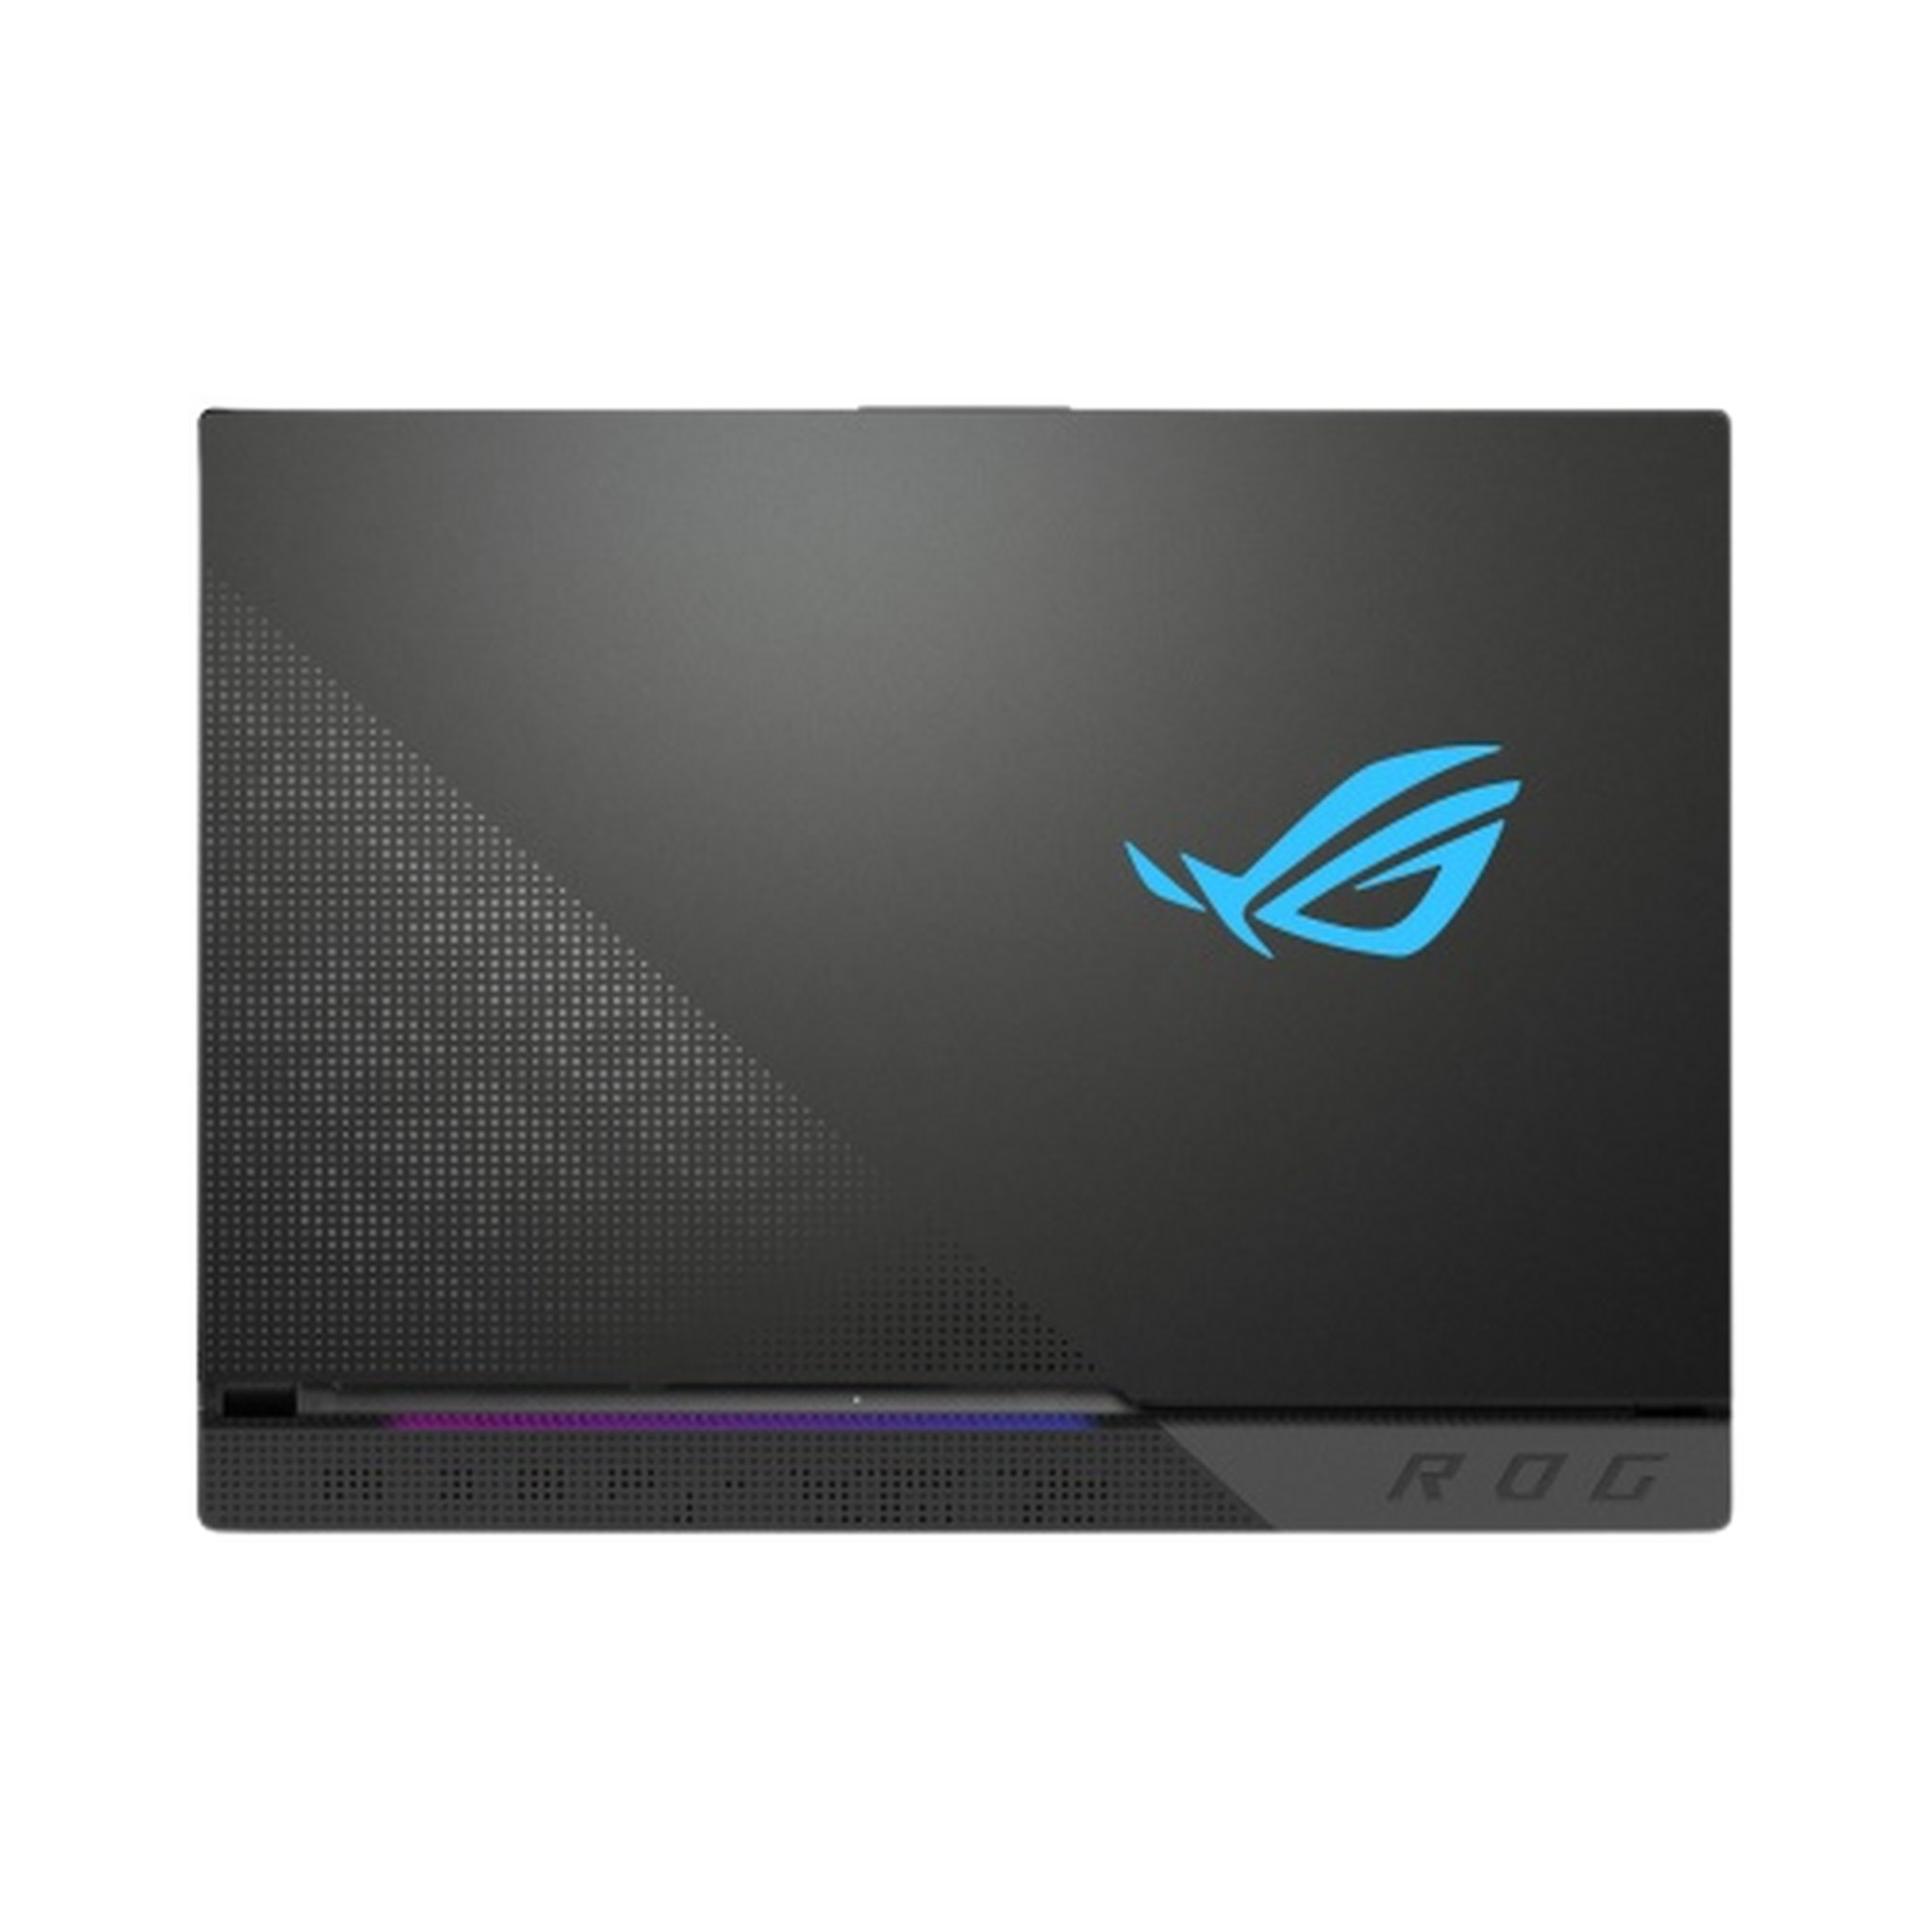 Asus ROG Strix SCAR 15, AMD Ryzen 7, Nvidia Geforce RTX3070 8GB, 16GB RAM, 1TB SSD, 15.6" FHD 300Hz Gaming Laptop (G533QR-HF004T)